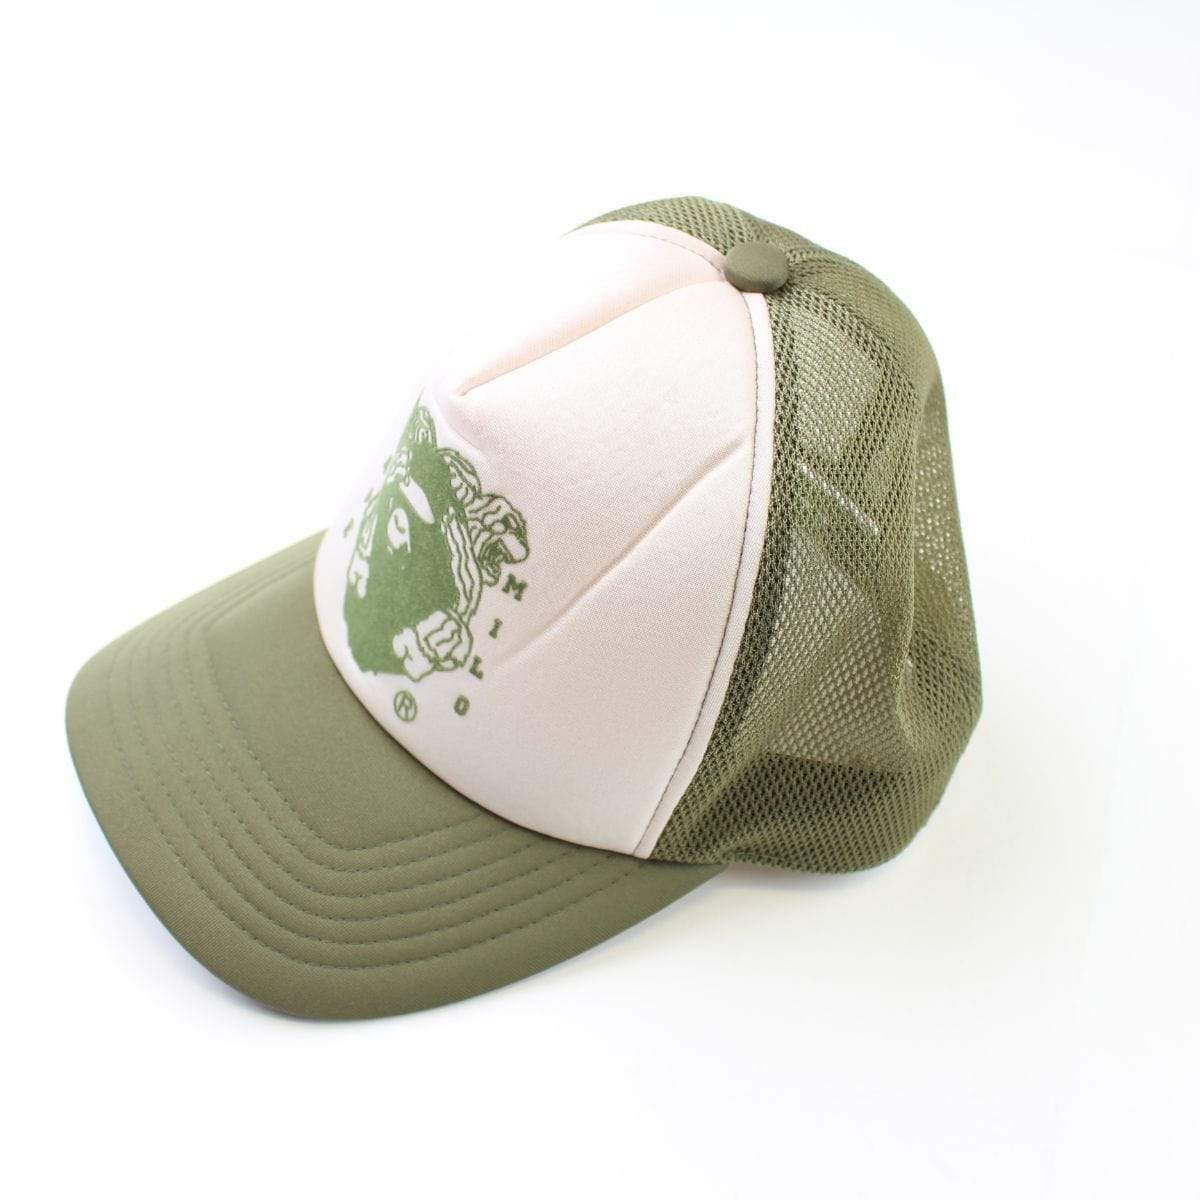 Bape Gorilla Logo Trucker Hat Olive - SaruGeneral